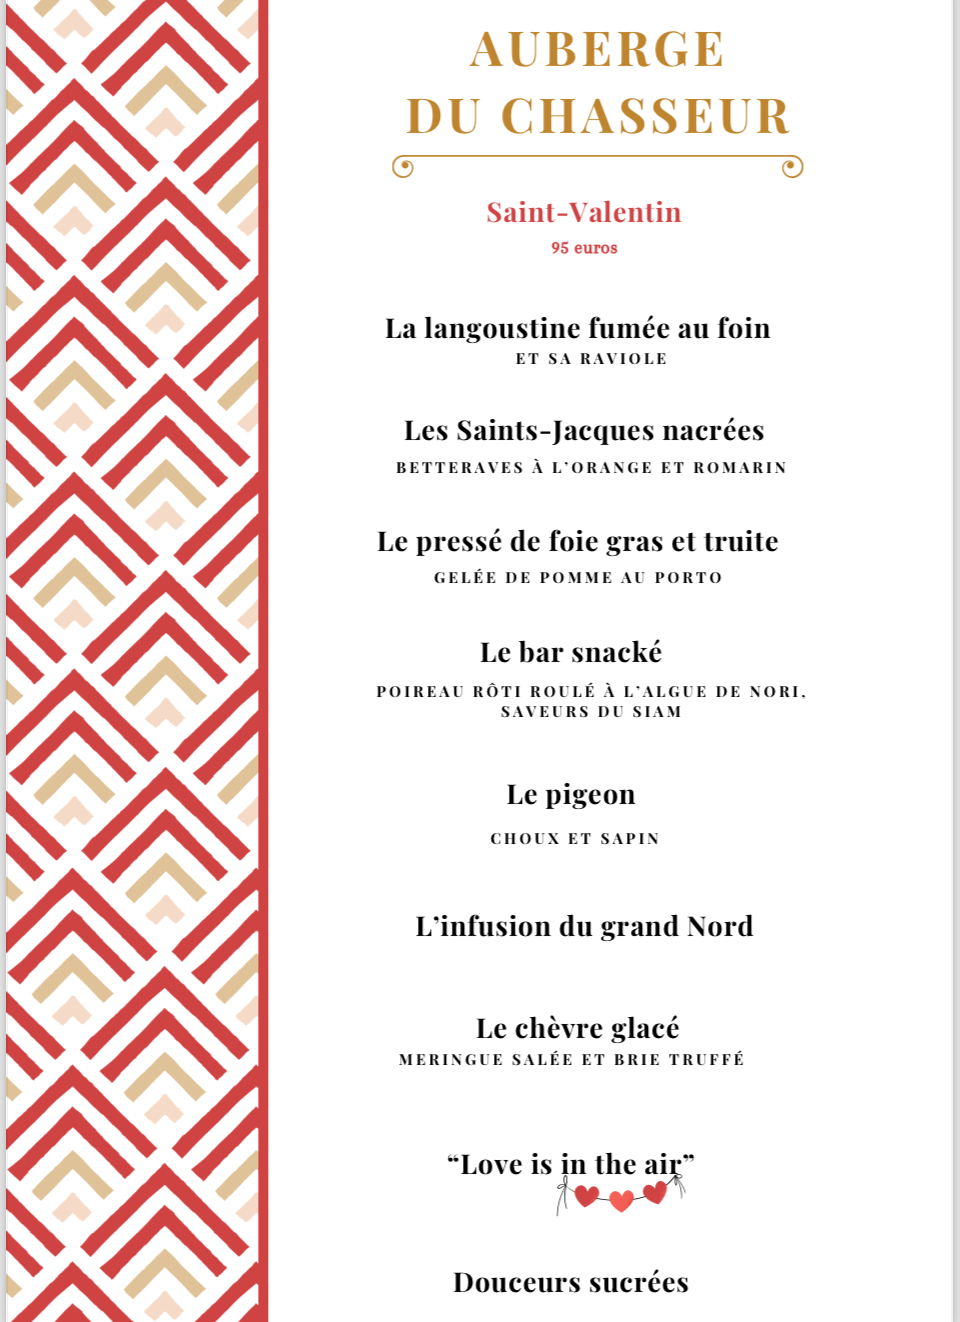 La Saint Valentin - Auberge du Chasseur - Restaurant Grosrouvre